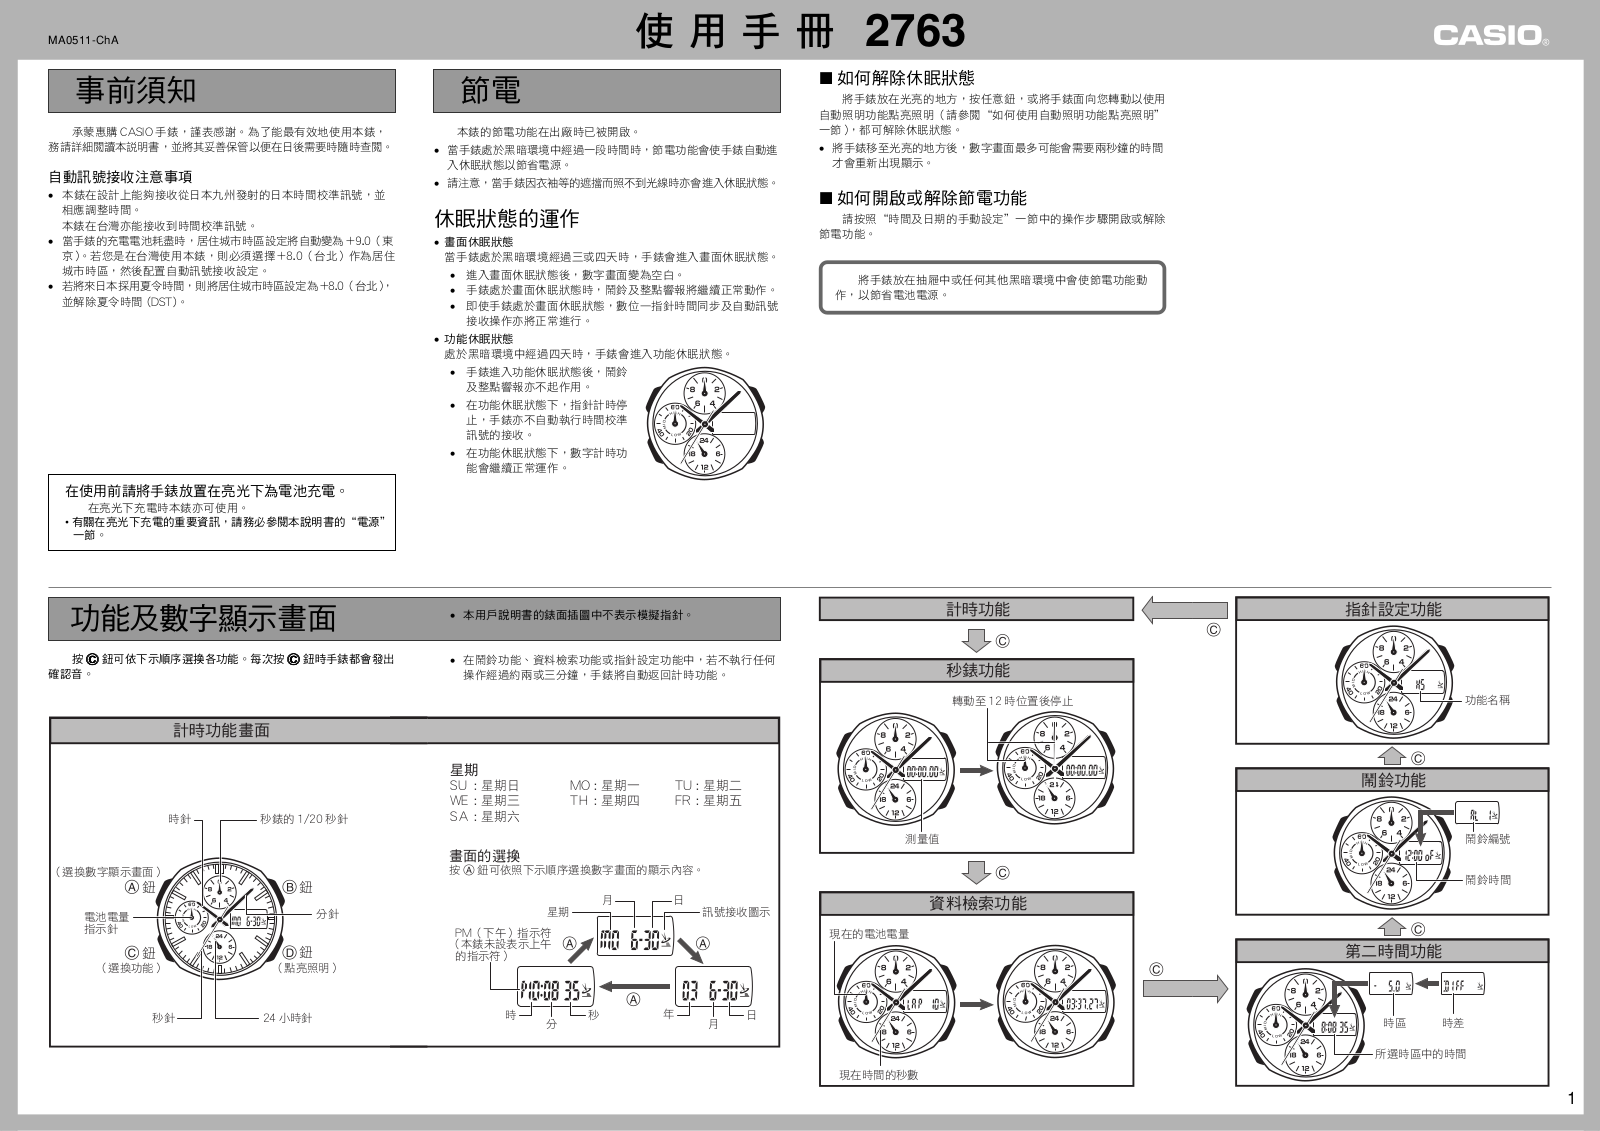 CASIO 2763 User Manual